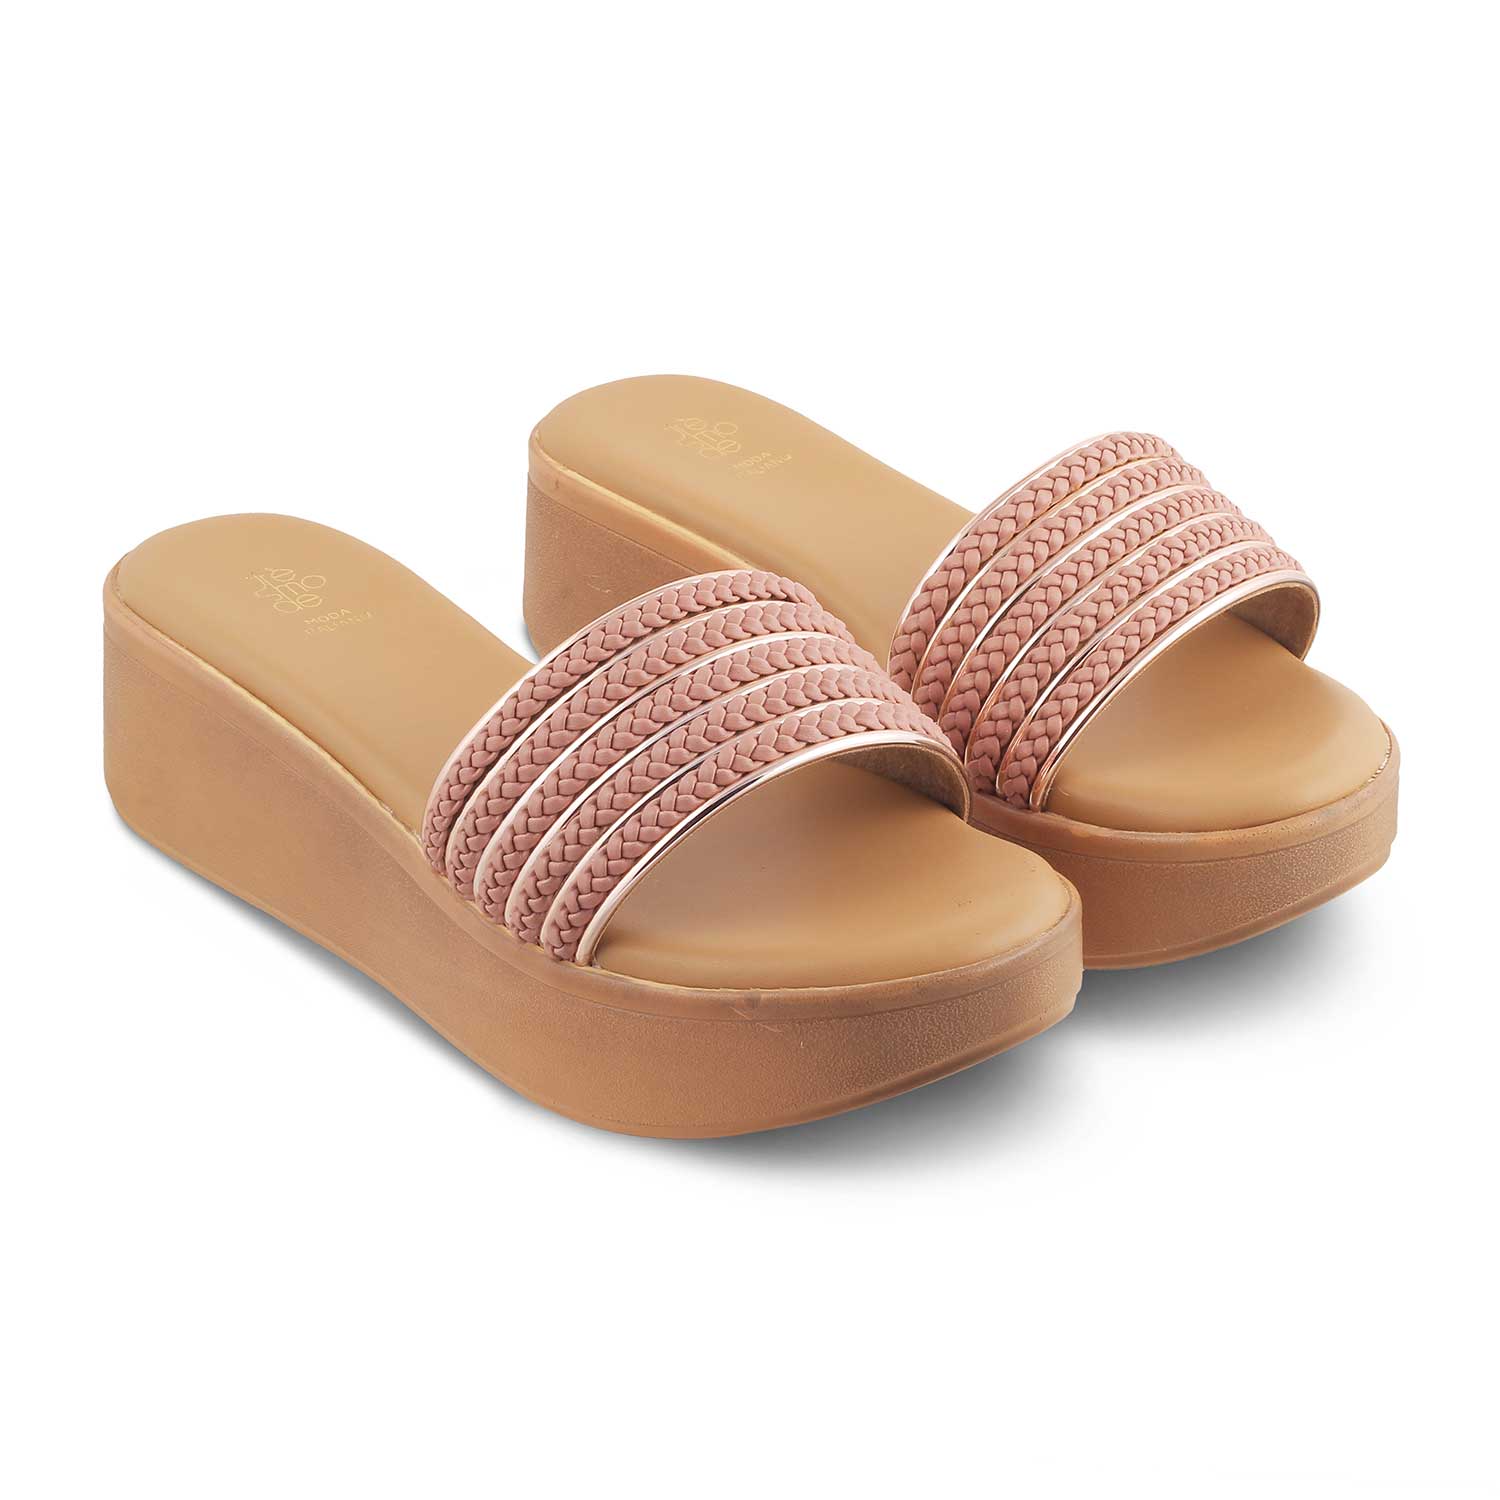 The Andiamo Pink Women's Platform Wedge Sandals Tresmode - Tresmode